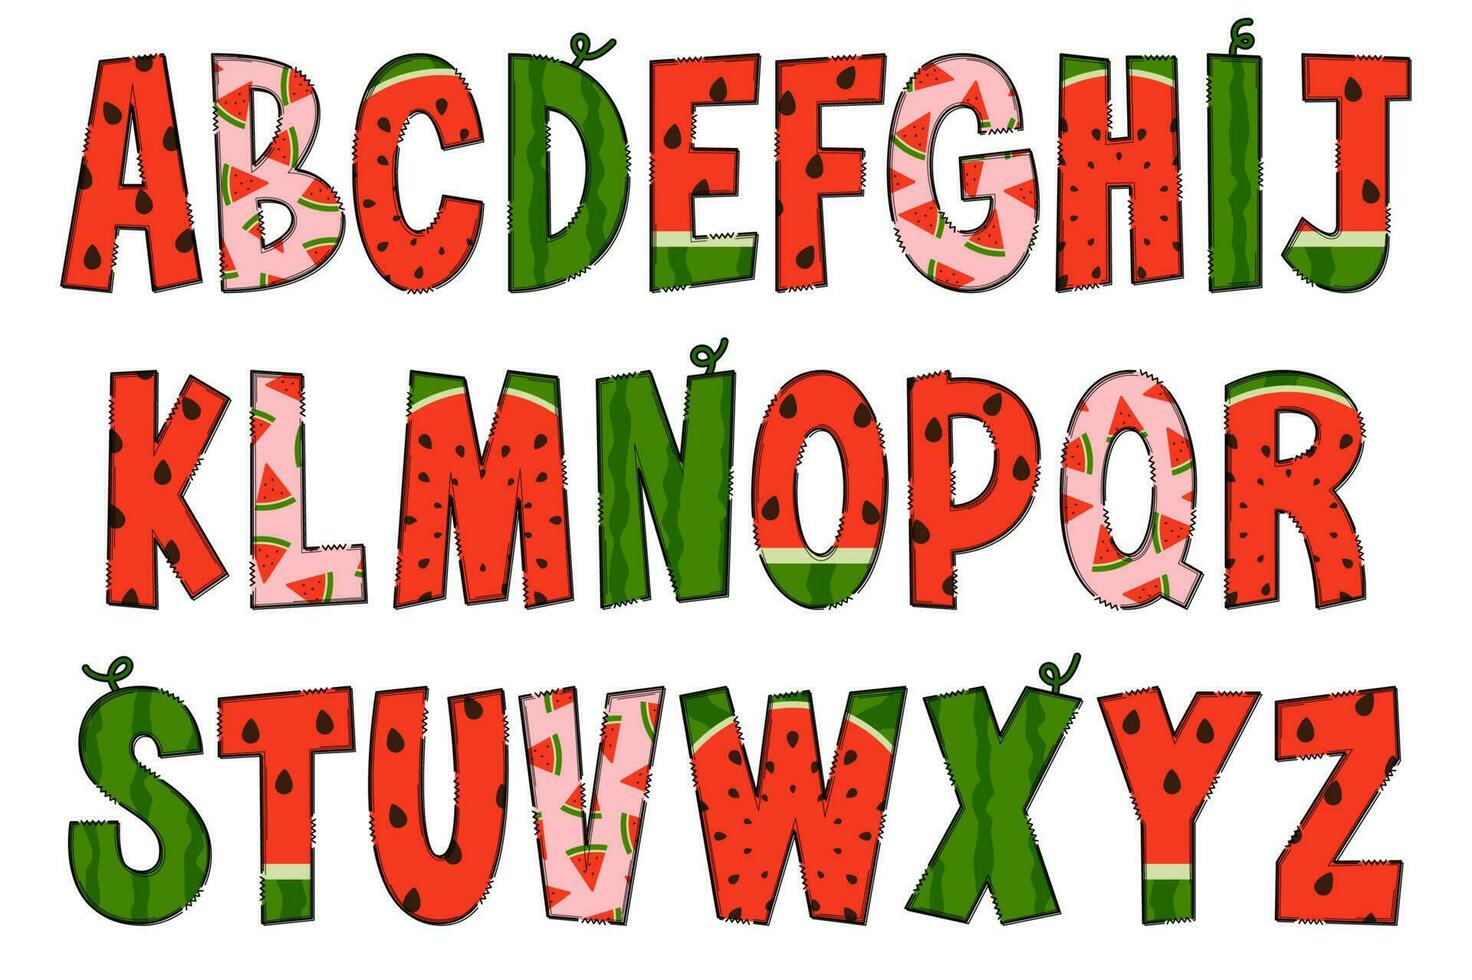 handgjord vattenmelon brev. Färg kreativ konst typografisk design vektor